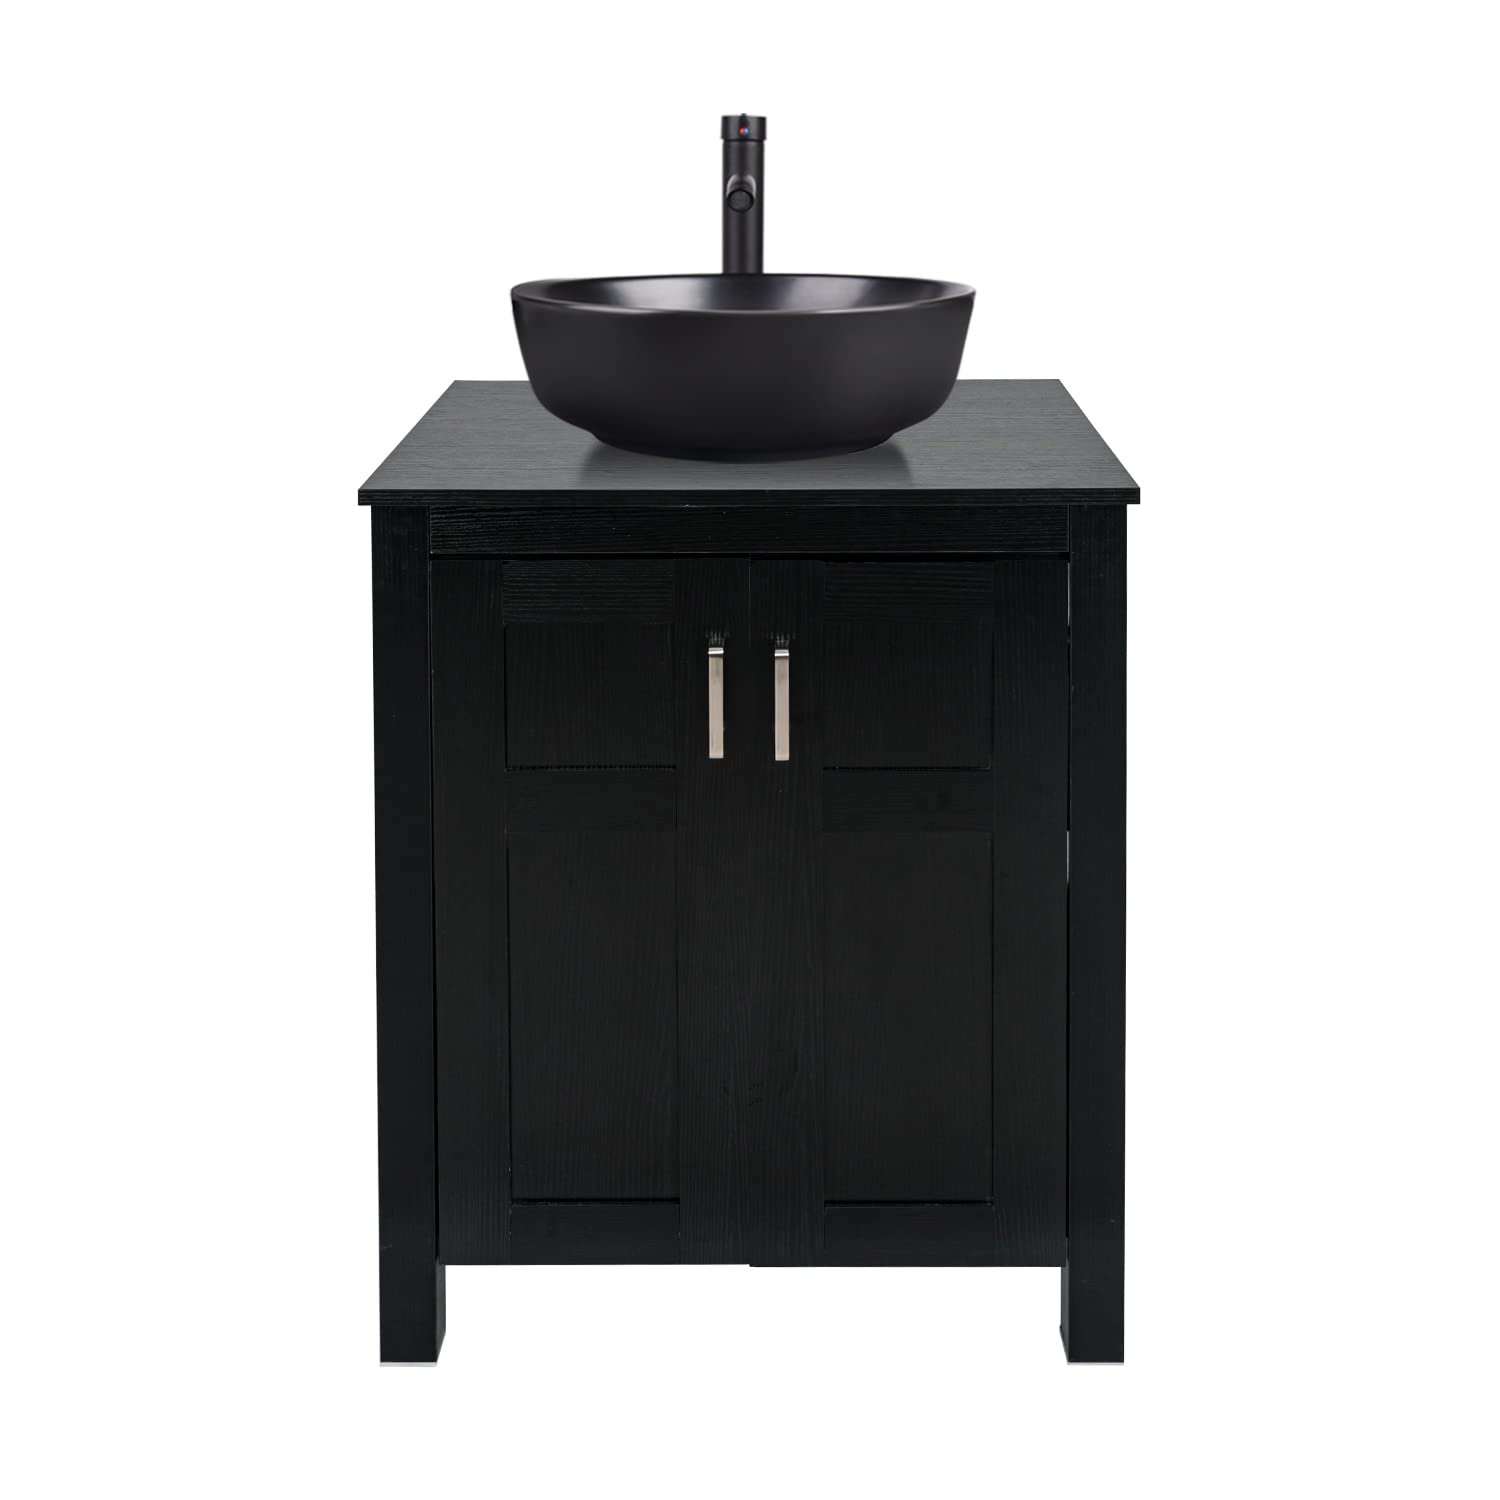 Black Bathroom Vanity Set with Round Ceramic Vessel Sink HW1120